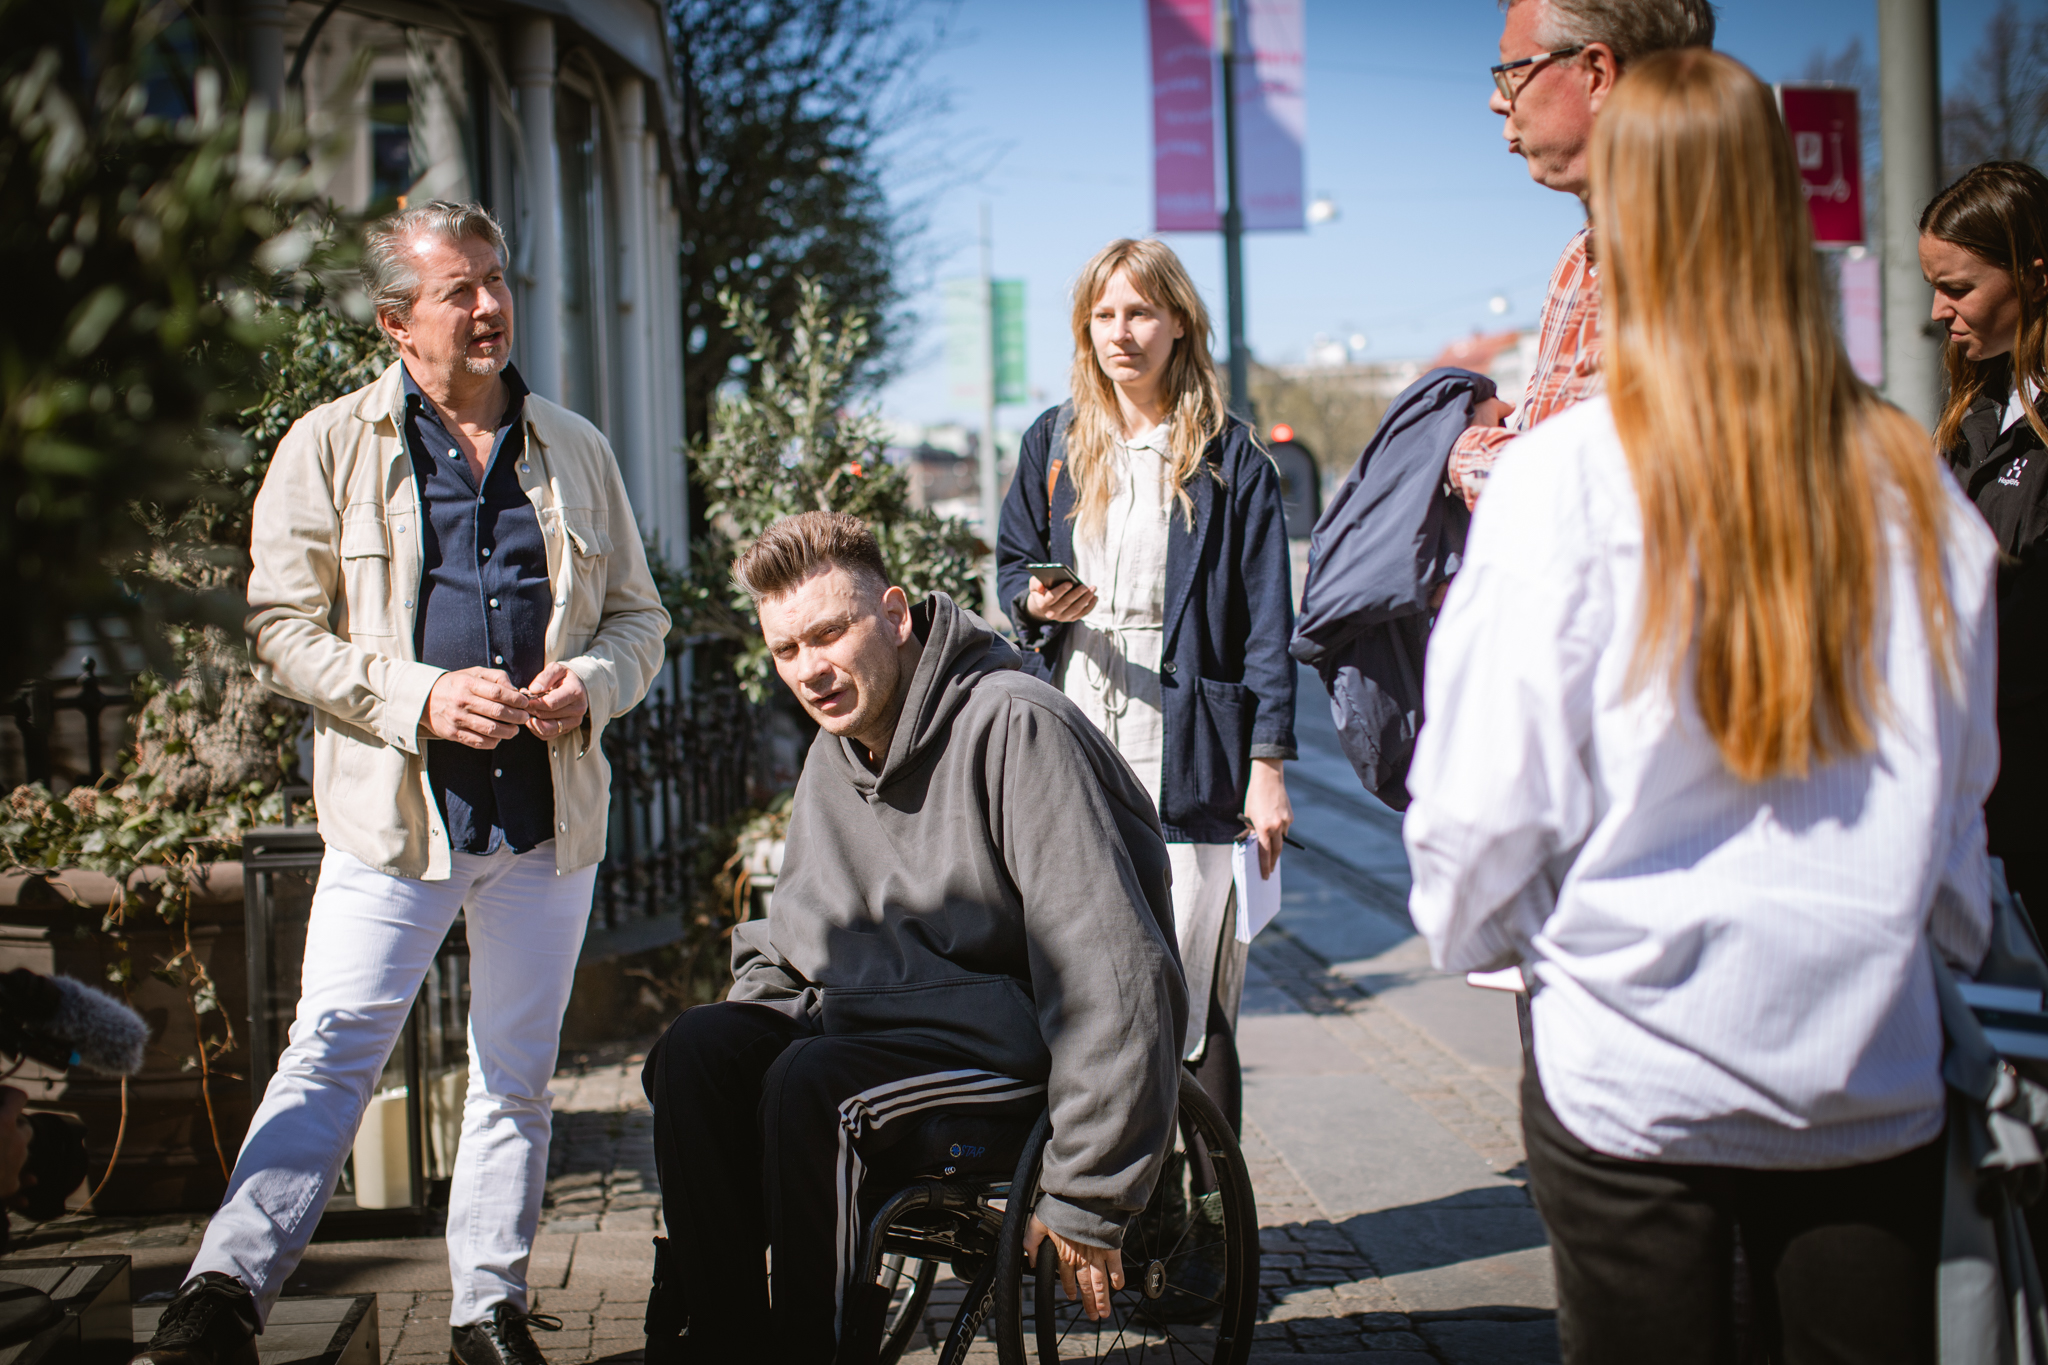 Anders Westgerd i rullstol, suppleant i Avenyföreningen och handläggare från kommunen samt reporter från GP utanför uteservering på Avenyn.